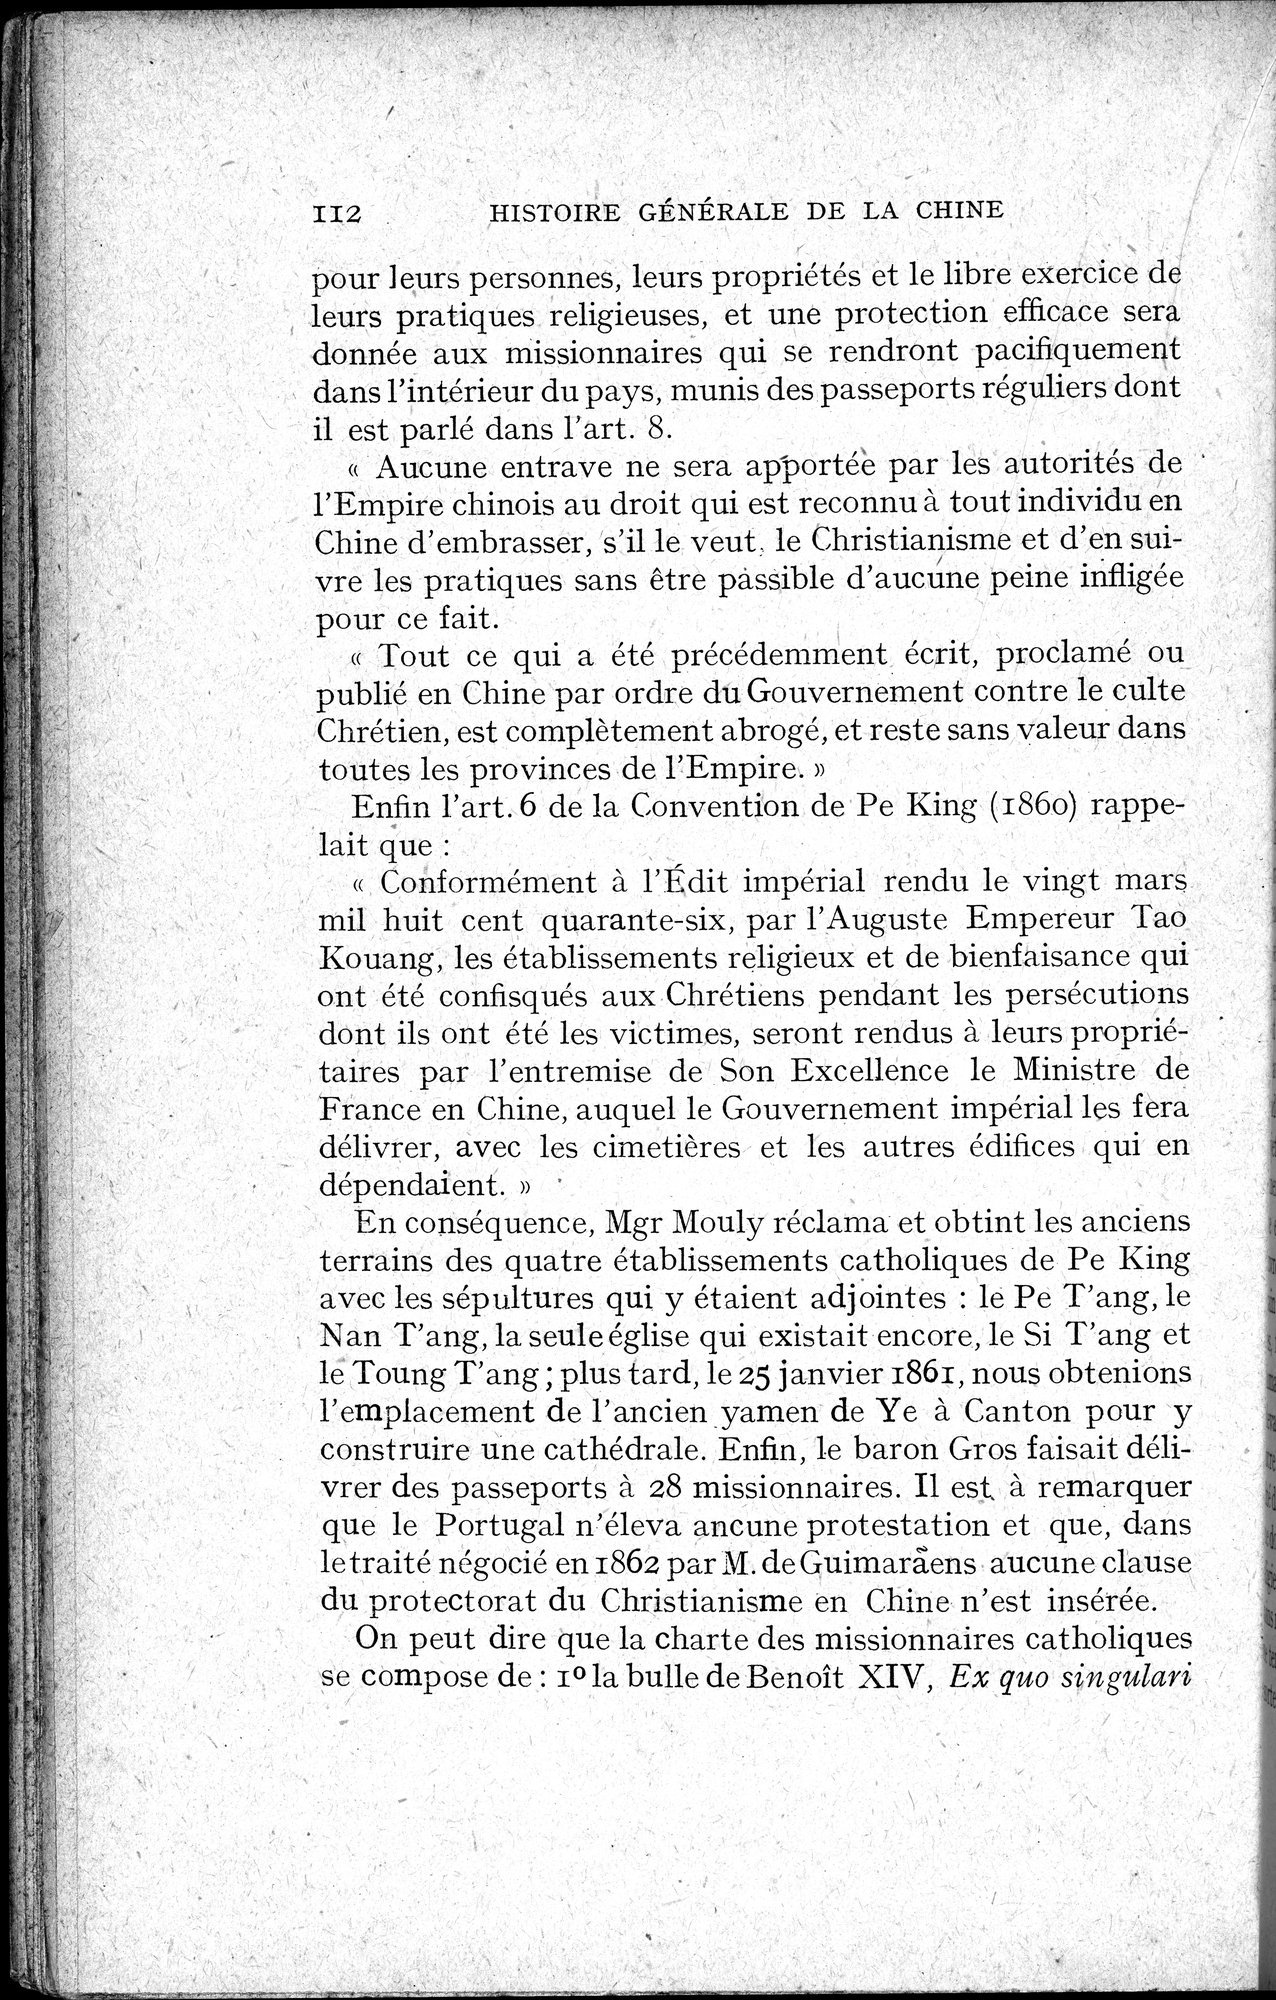 Histoire Générale de la Chine : vol.4 / Page 114 (Grayscale High Resolution Image)